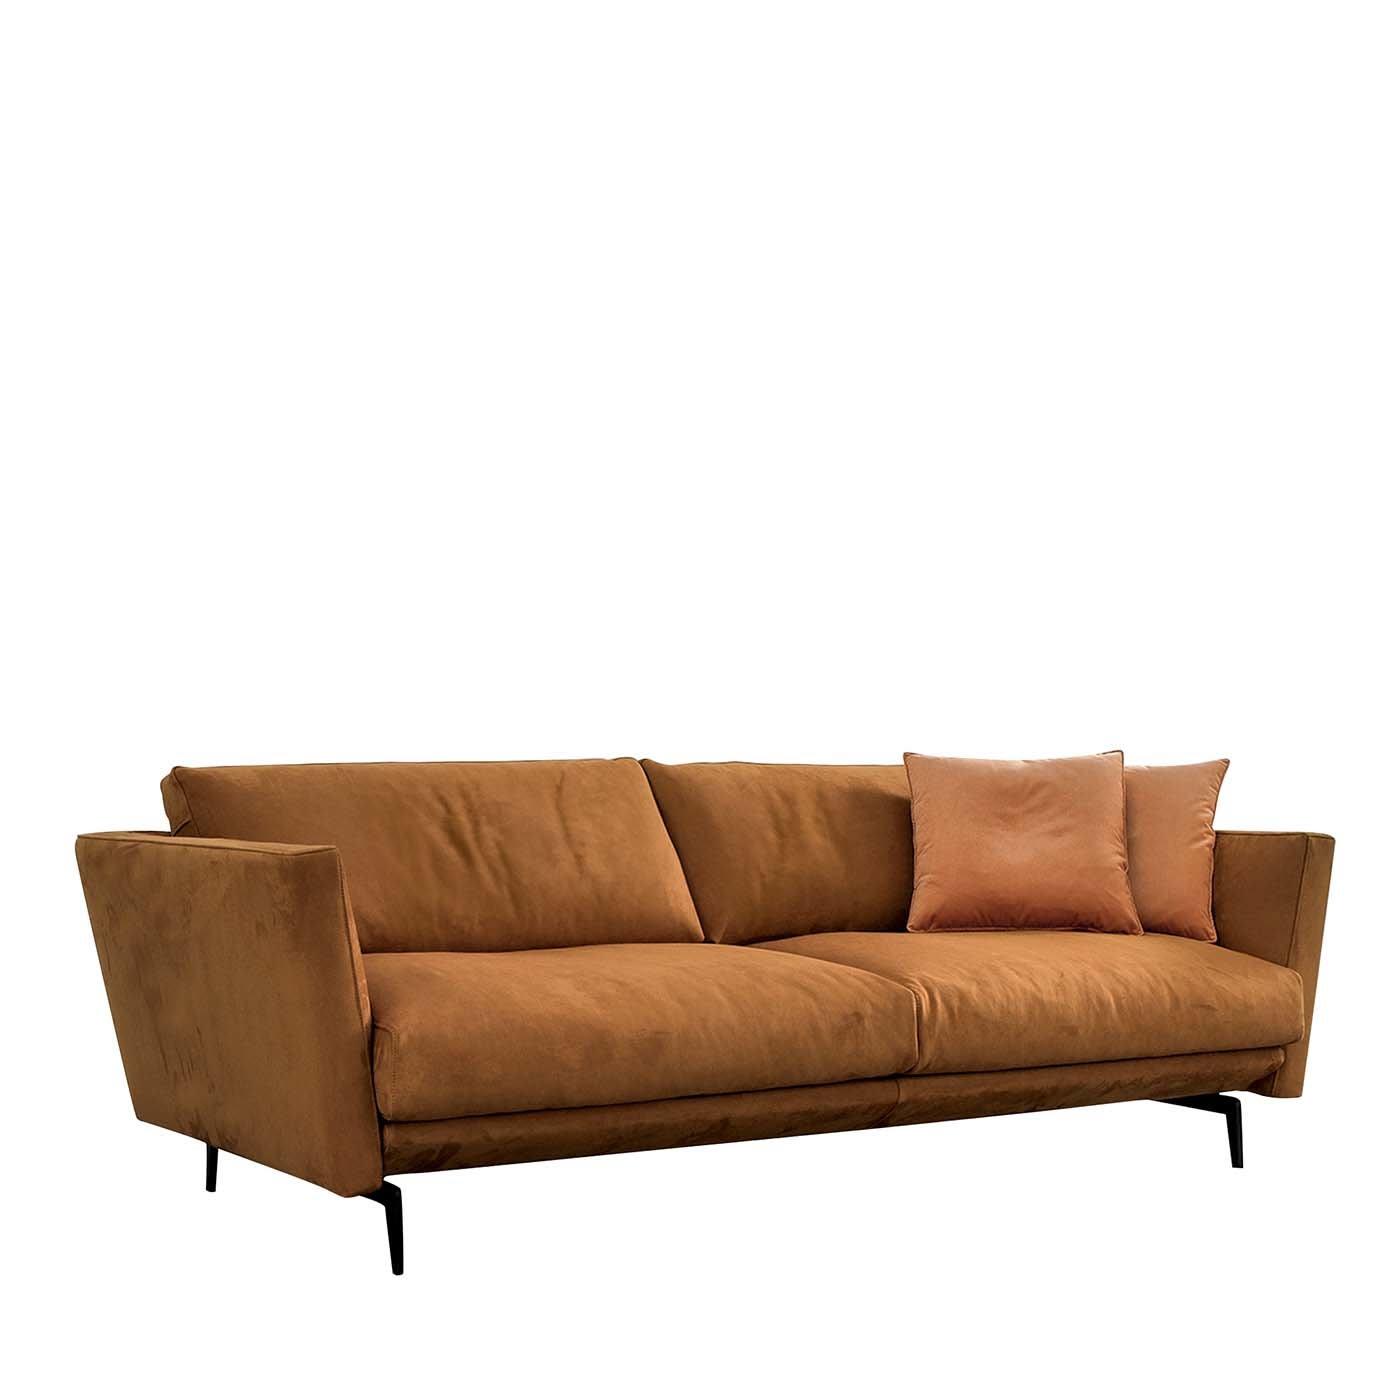 Urban Orange Sofa by Marconato e Zappa - CTS Salotti